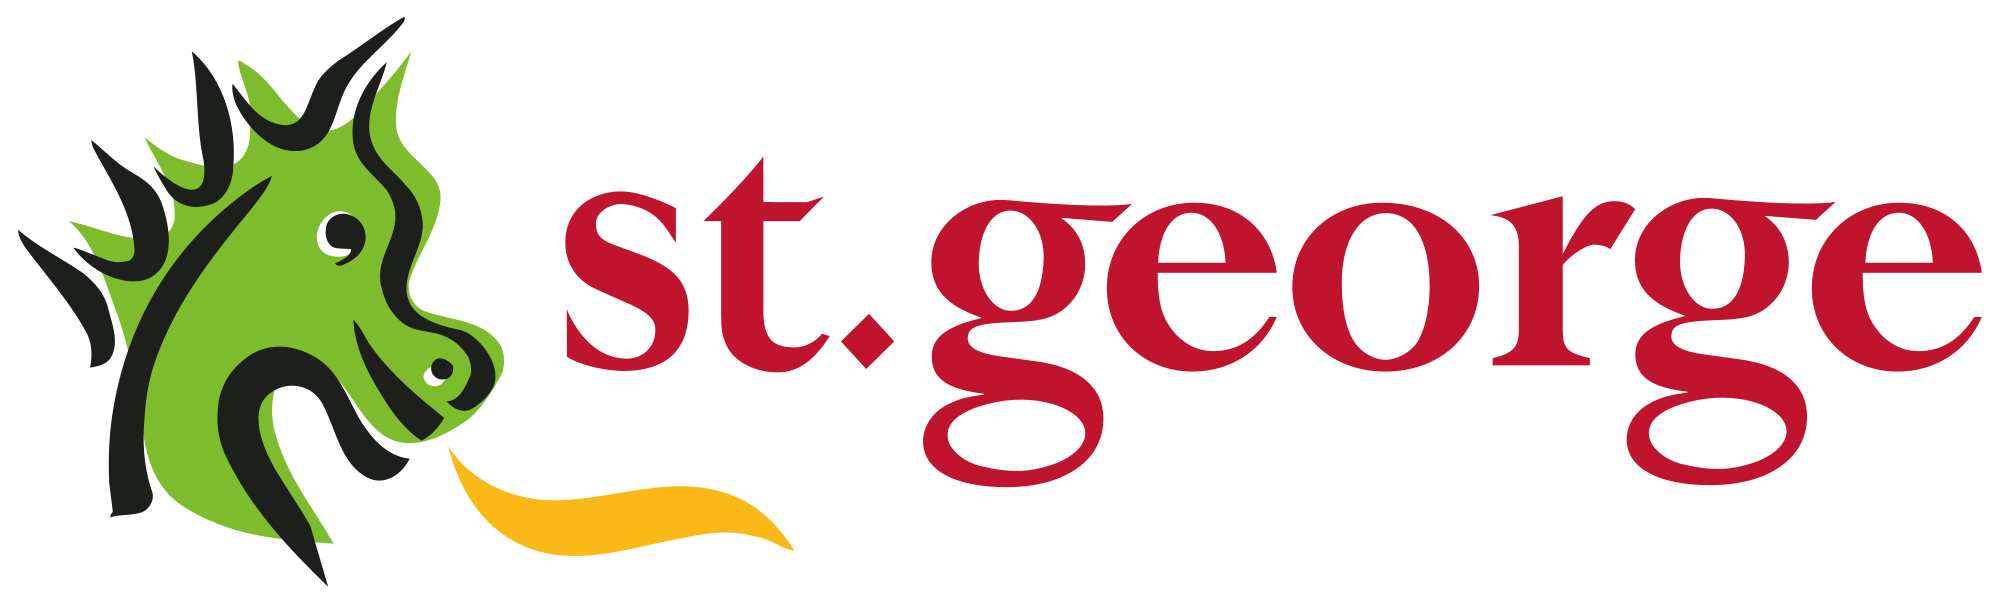 St._George_Bank_logo.svg.png